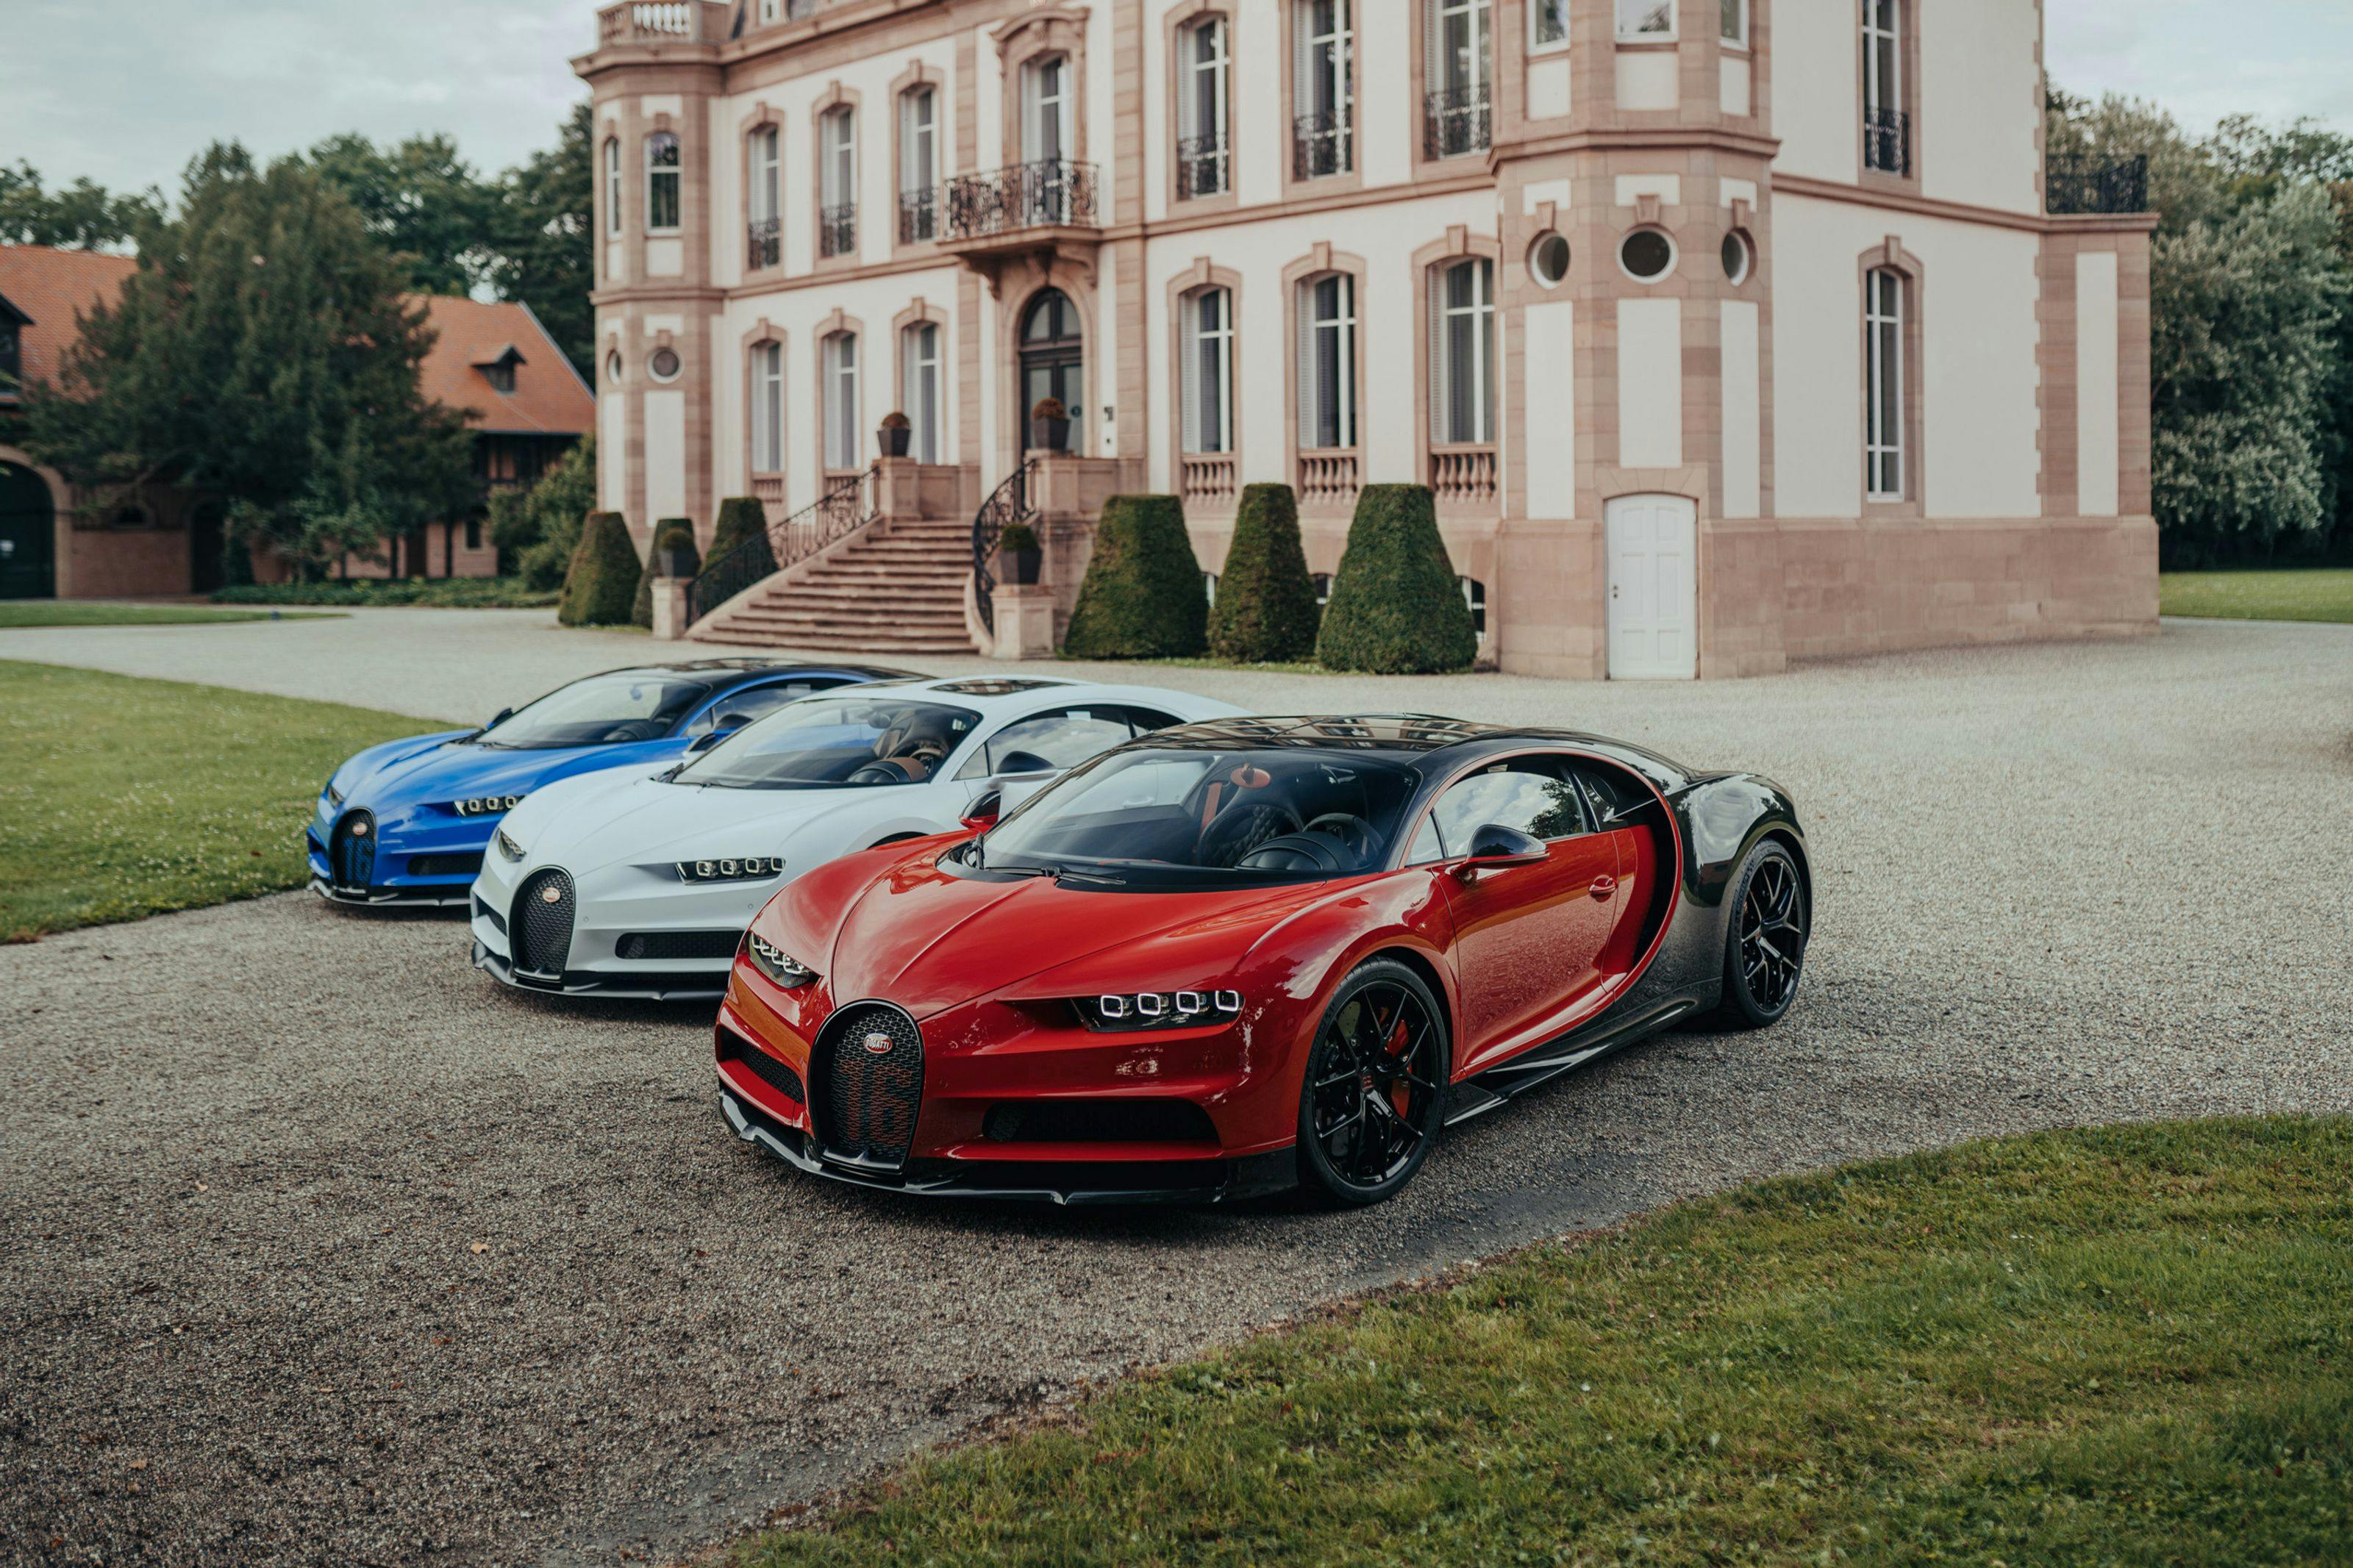 Bugatti célèbre la fête nationale française